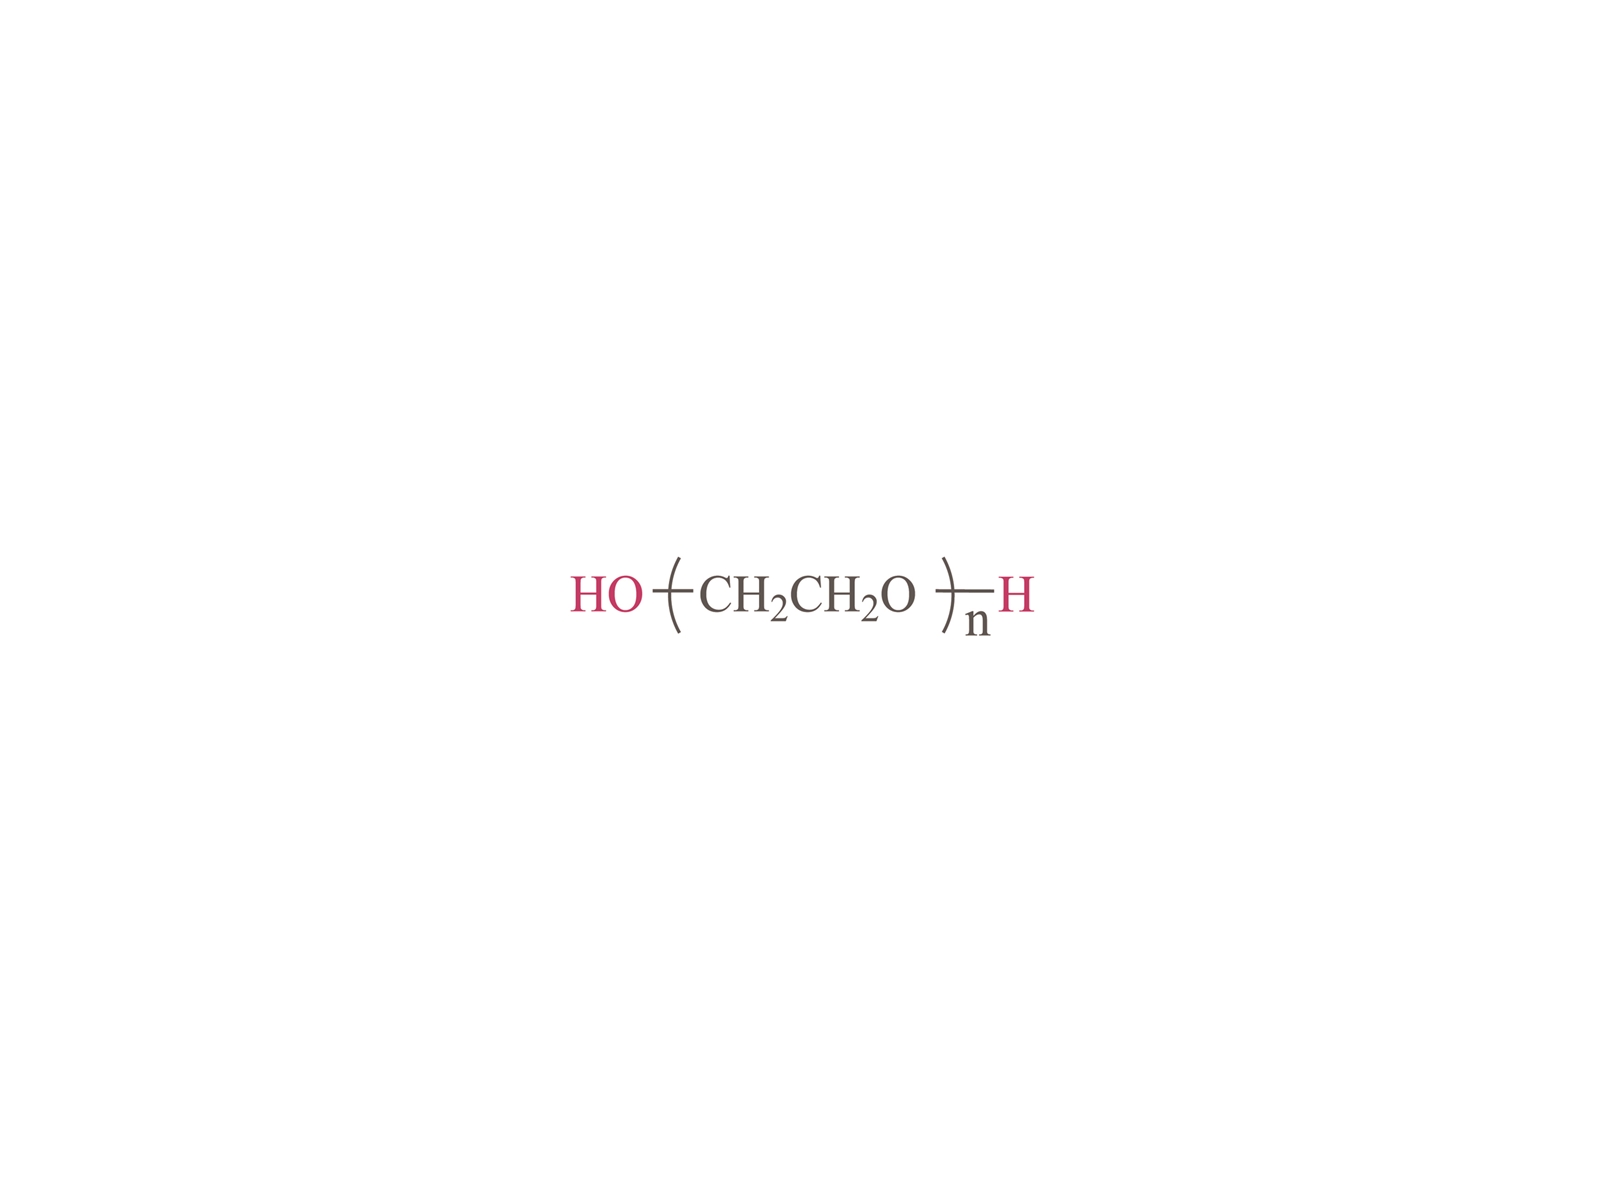 α, Ω-dihidroxili poli (etilenglicol) [HO-PEG-OH] CAS: 25322-68-3